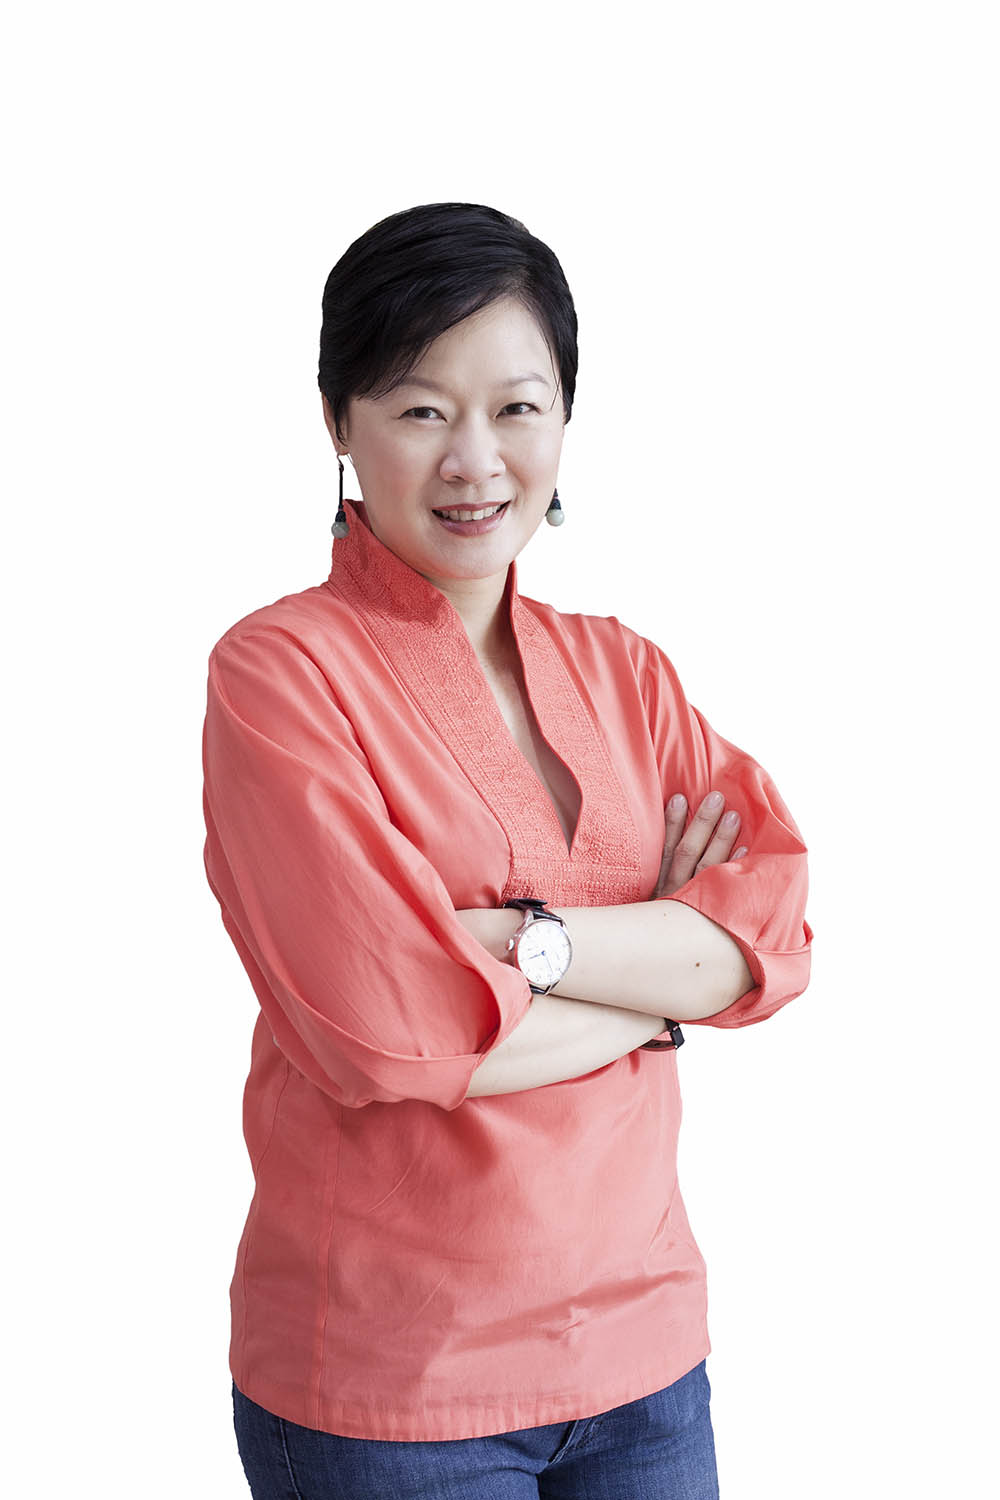 Dr Chua Yang- Mount Alvernia